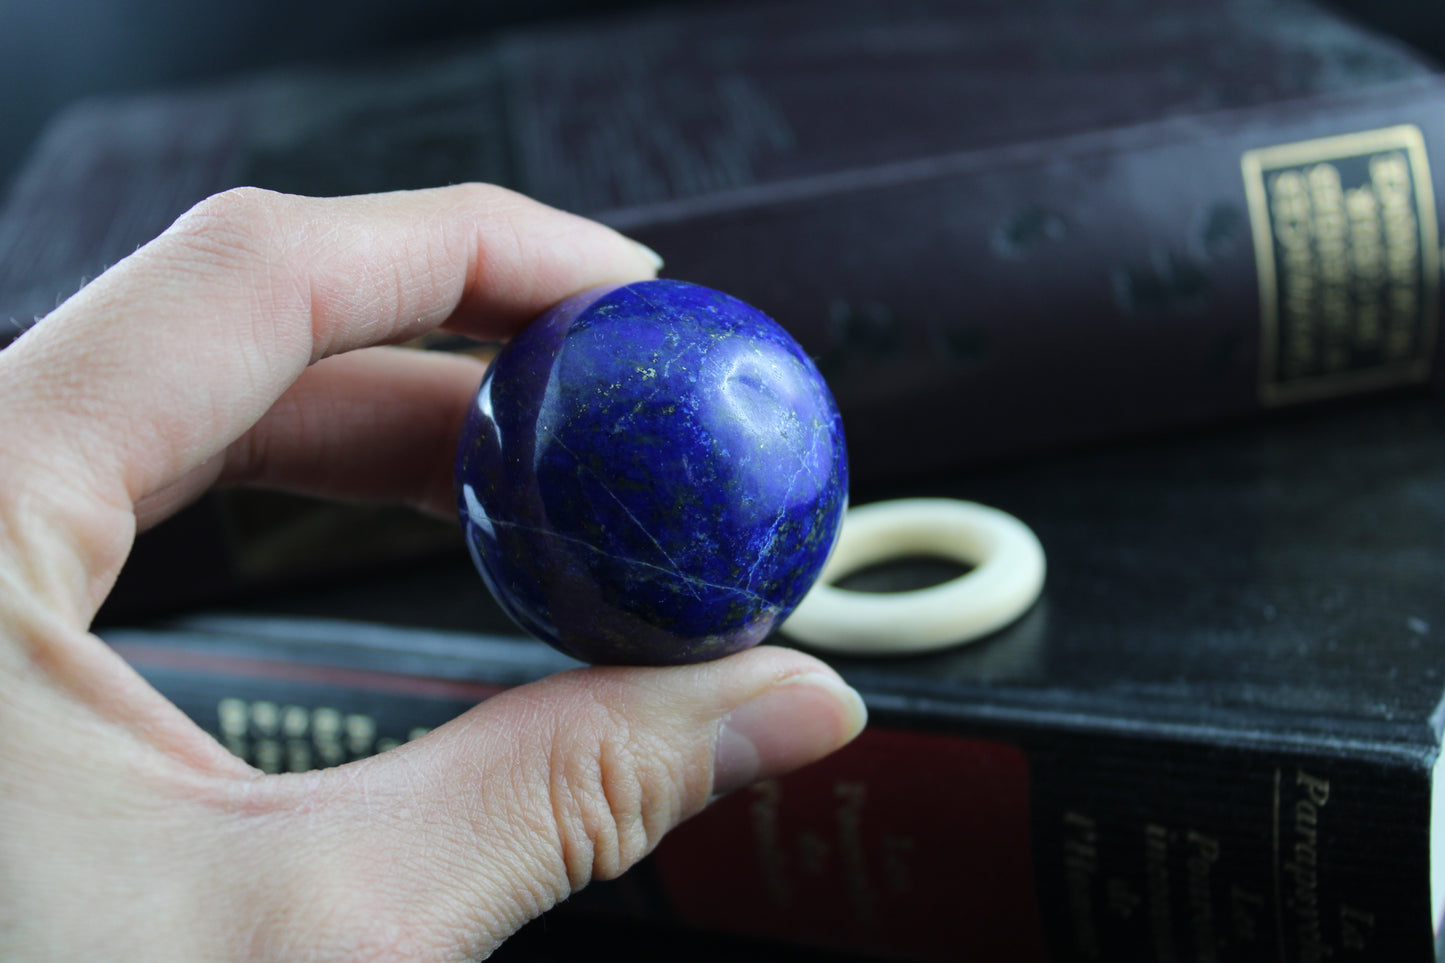 Sphère lapis lazuli 4 cm 92 grammes